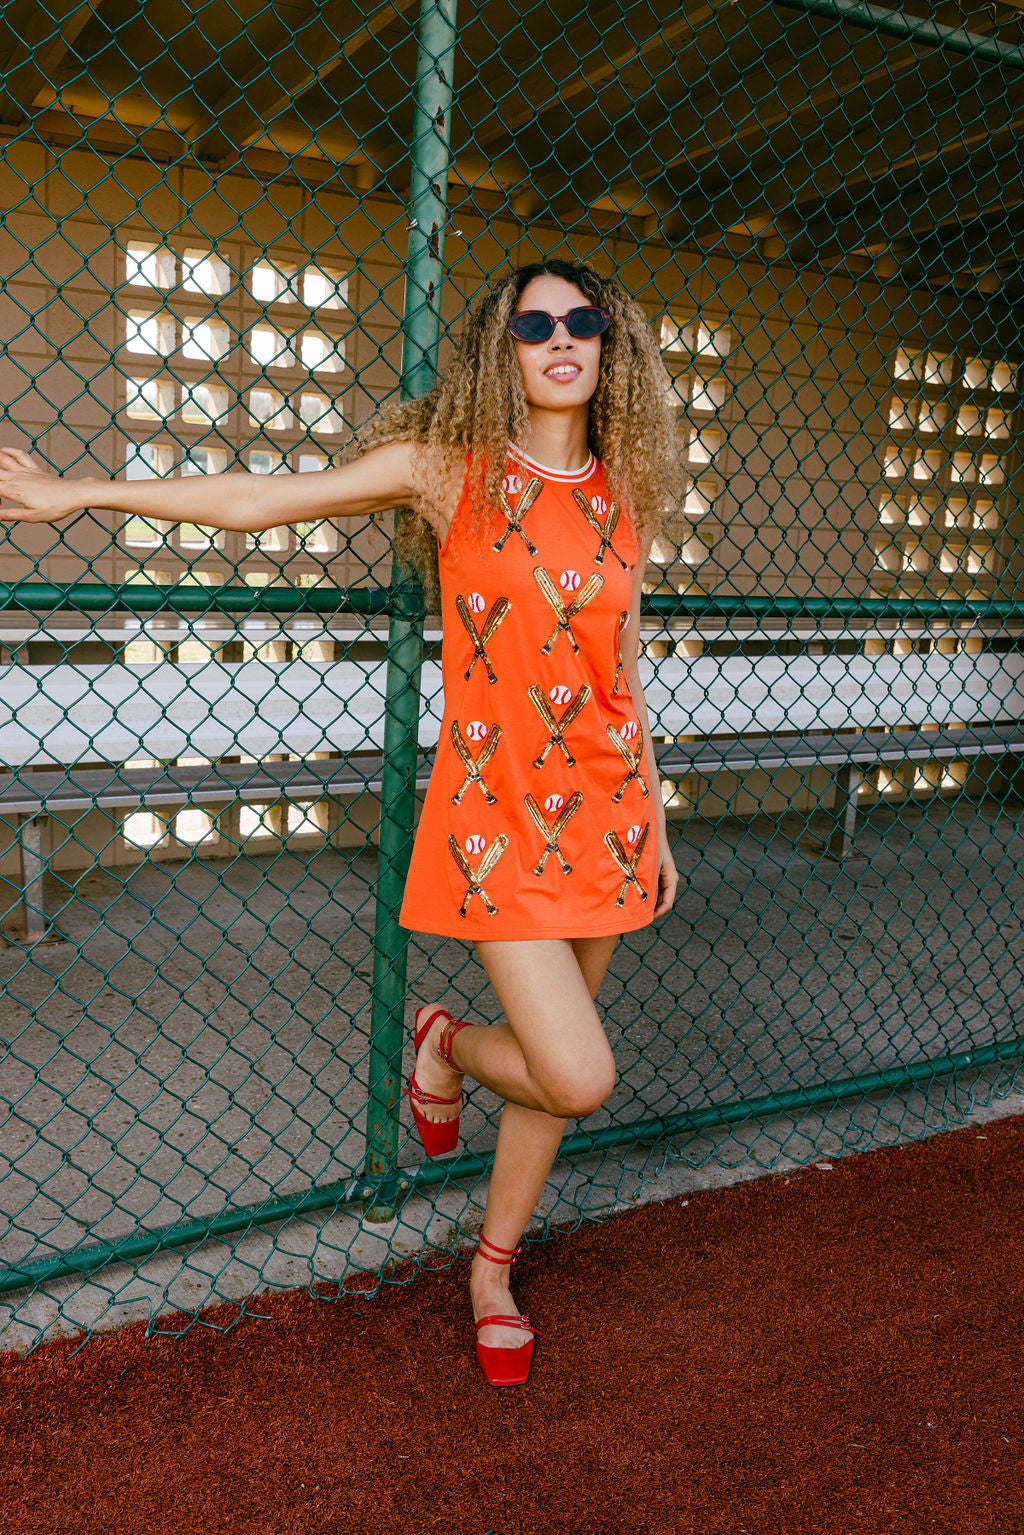 Orange Scattered Baseball Bat Tank Dress